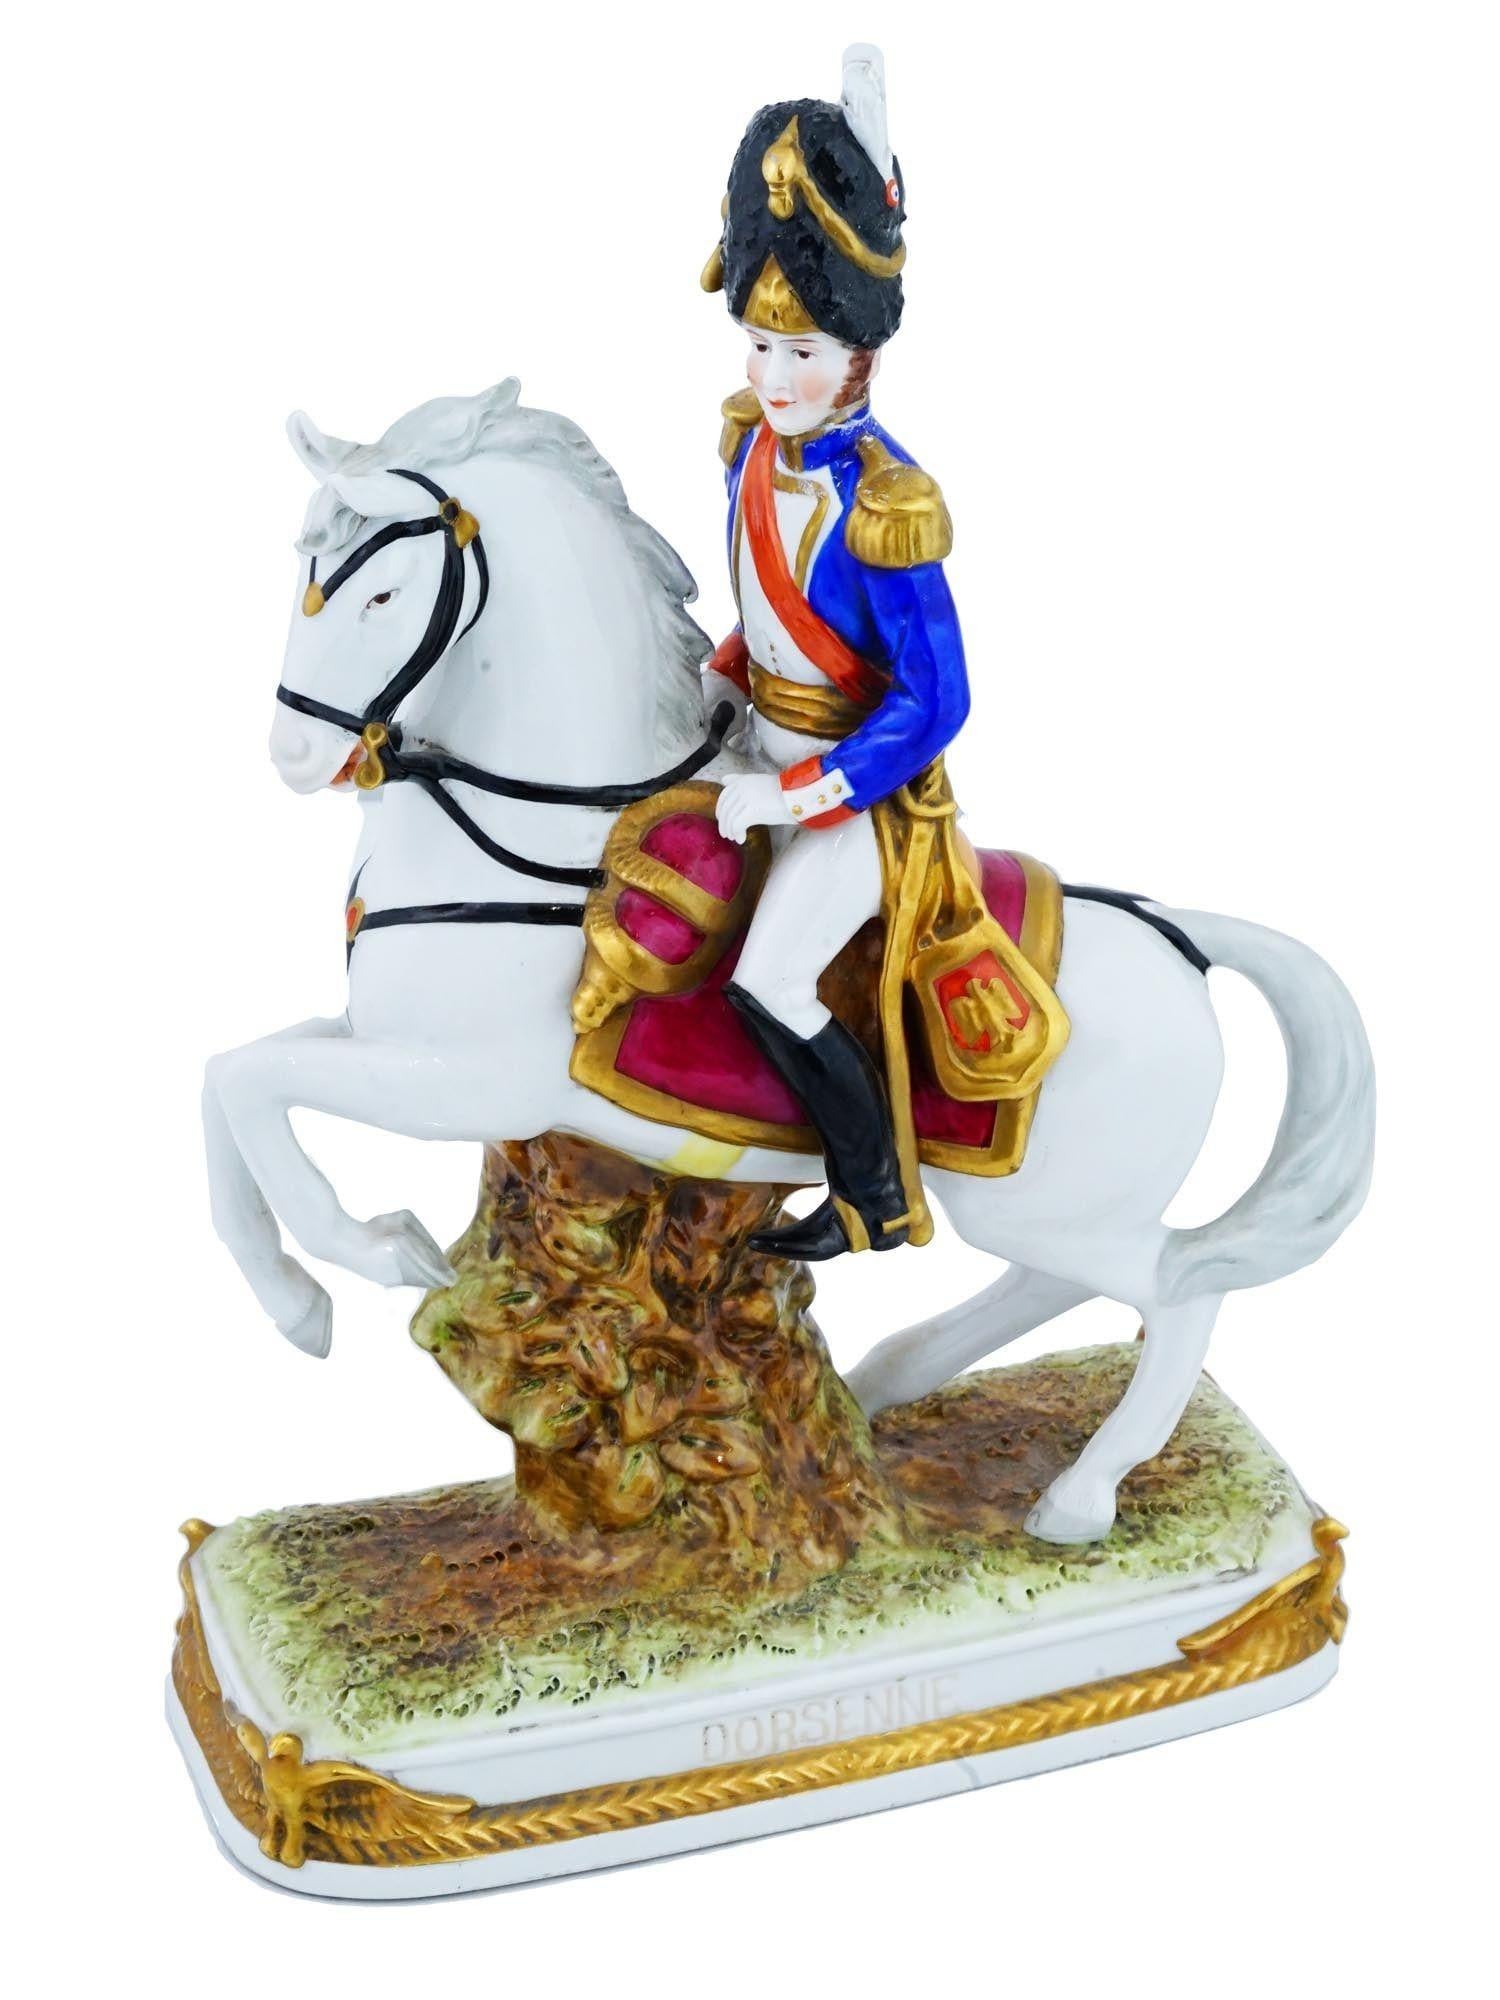 Vintage By Deutsche Porzellanfigur eines napoleonischen Offiziers auf einem weißen Pferd, die Jean Marie Dorsenne Graf Lepaige, 1773 bis 1812, einen französischen Offizier der französischen Revolutionskriege und der napoleonischen Kriege,